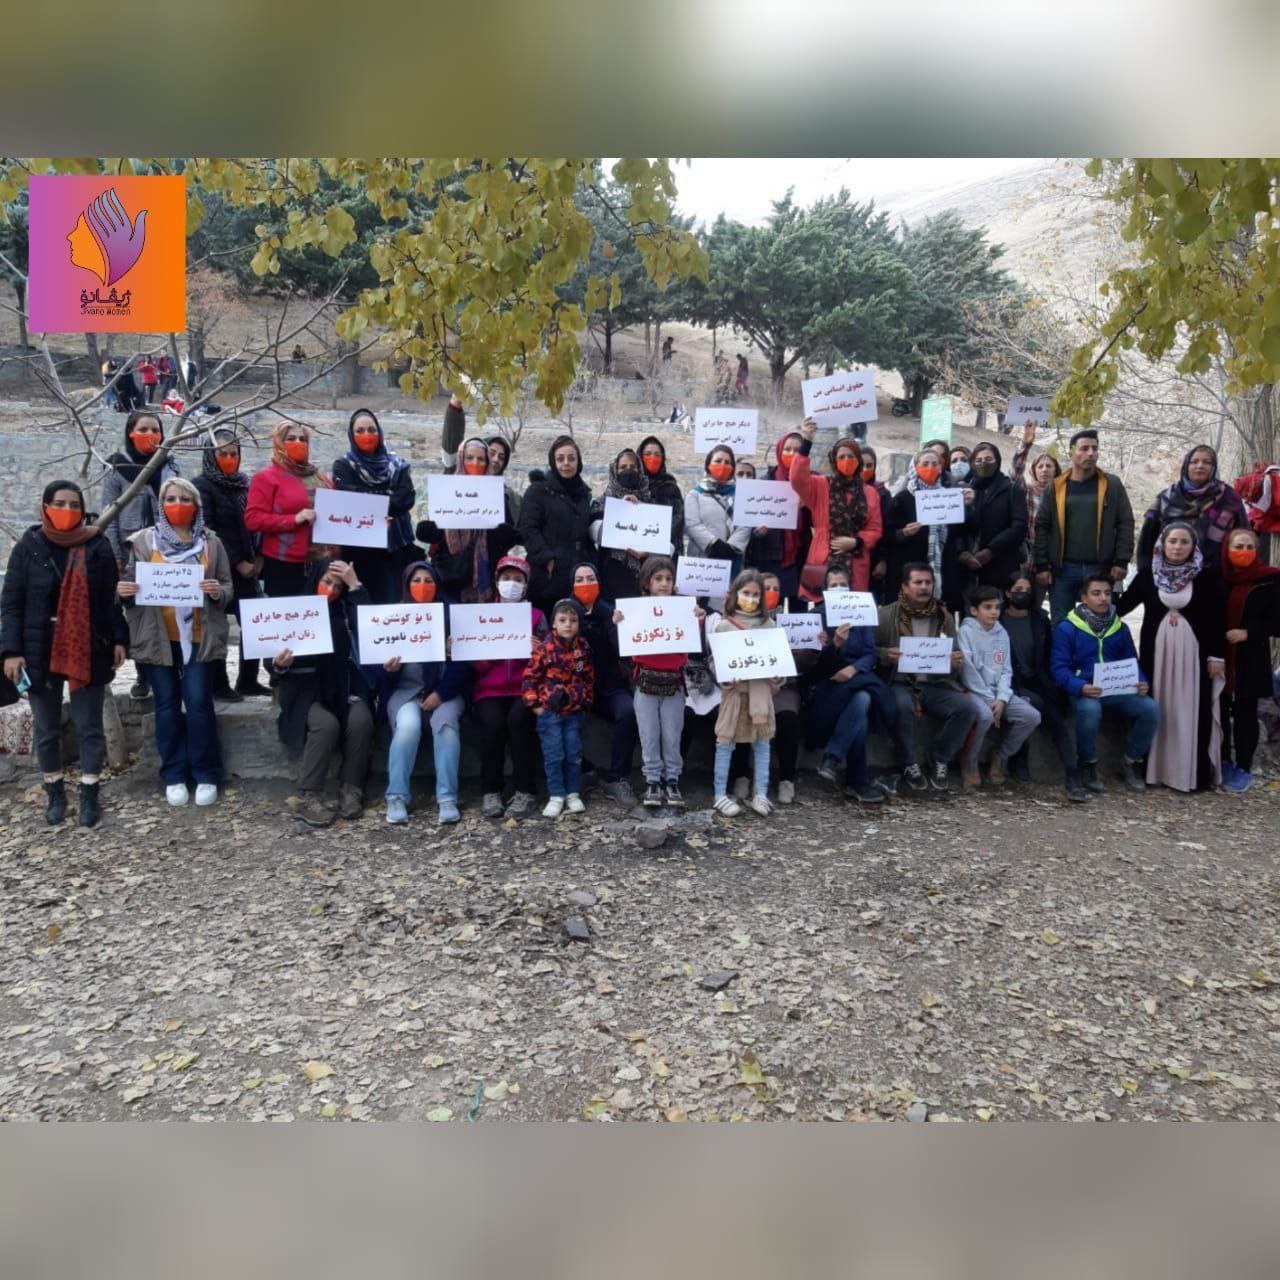 سنندج؛ تجمع فعالان حقوق زنان و اعضای گروه ژیوانو به مناسبت روز جهانی منع خشونت علیه زنان